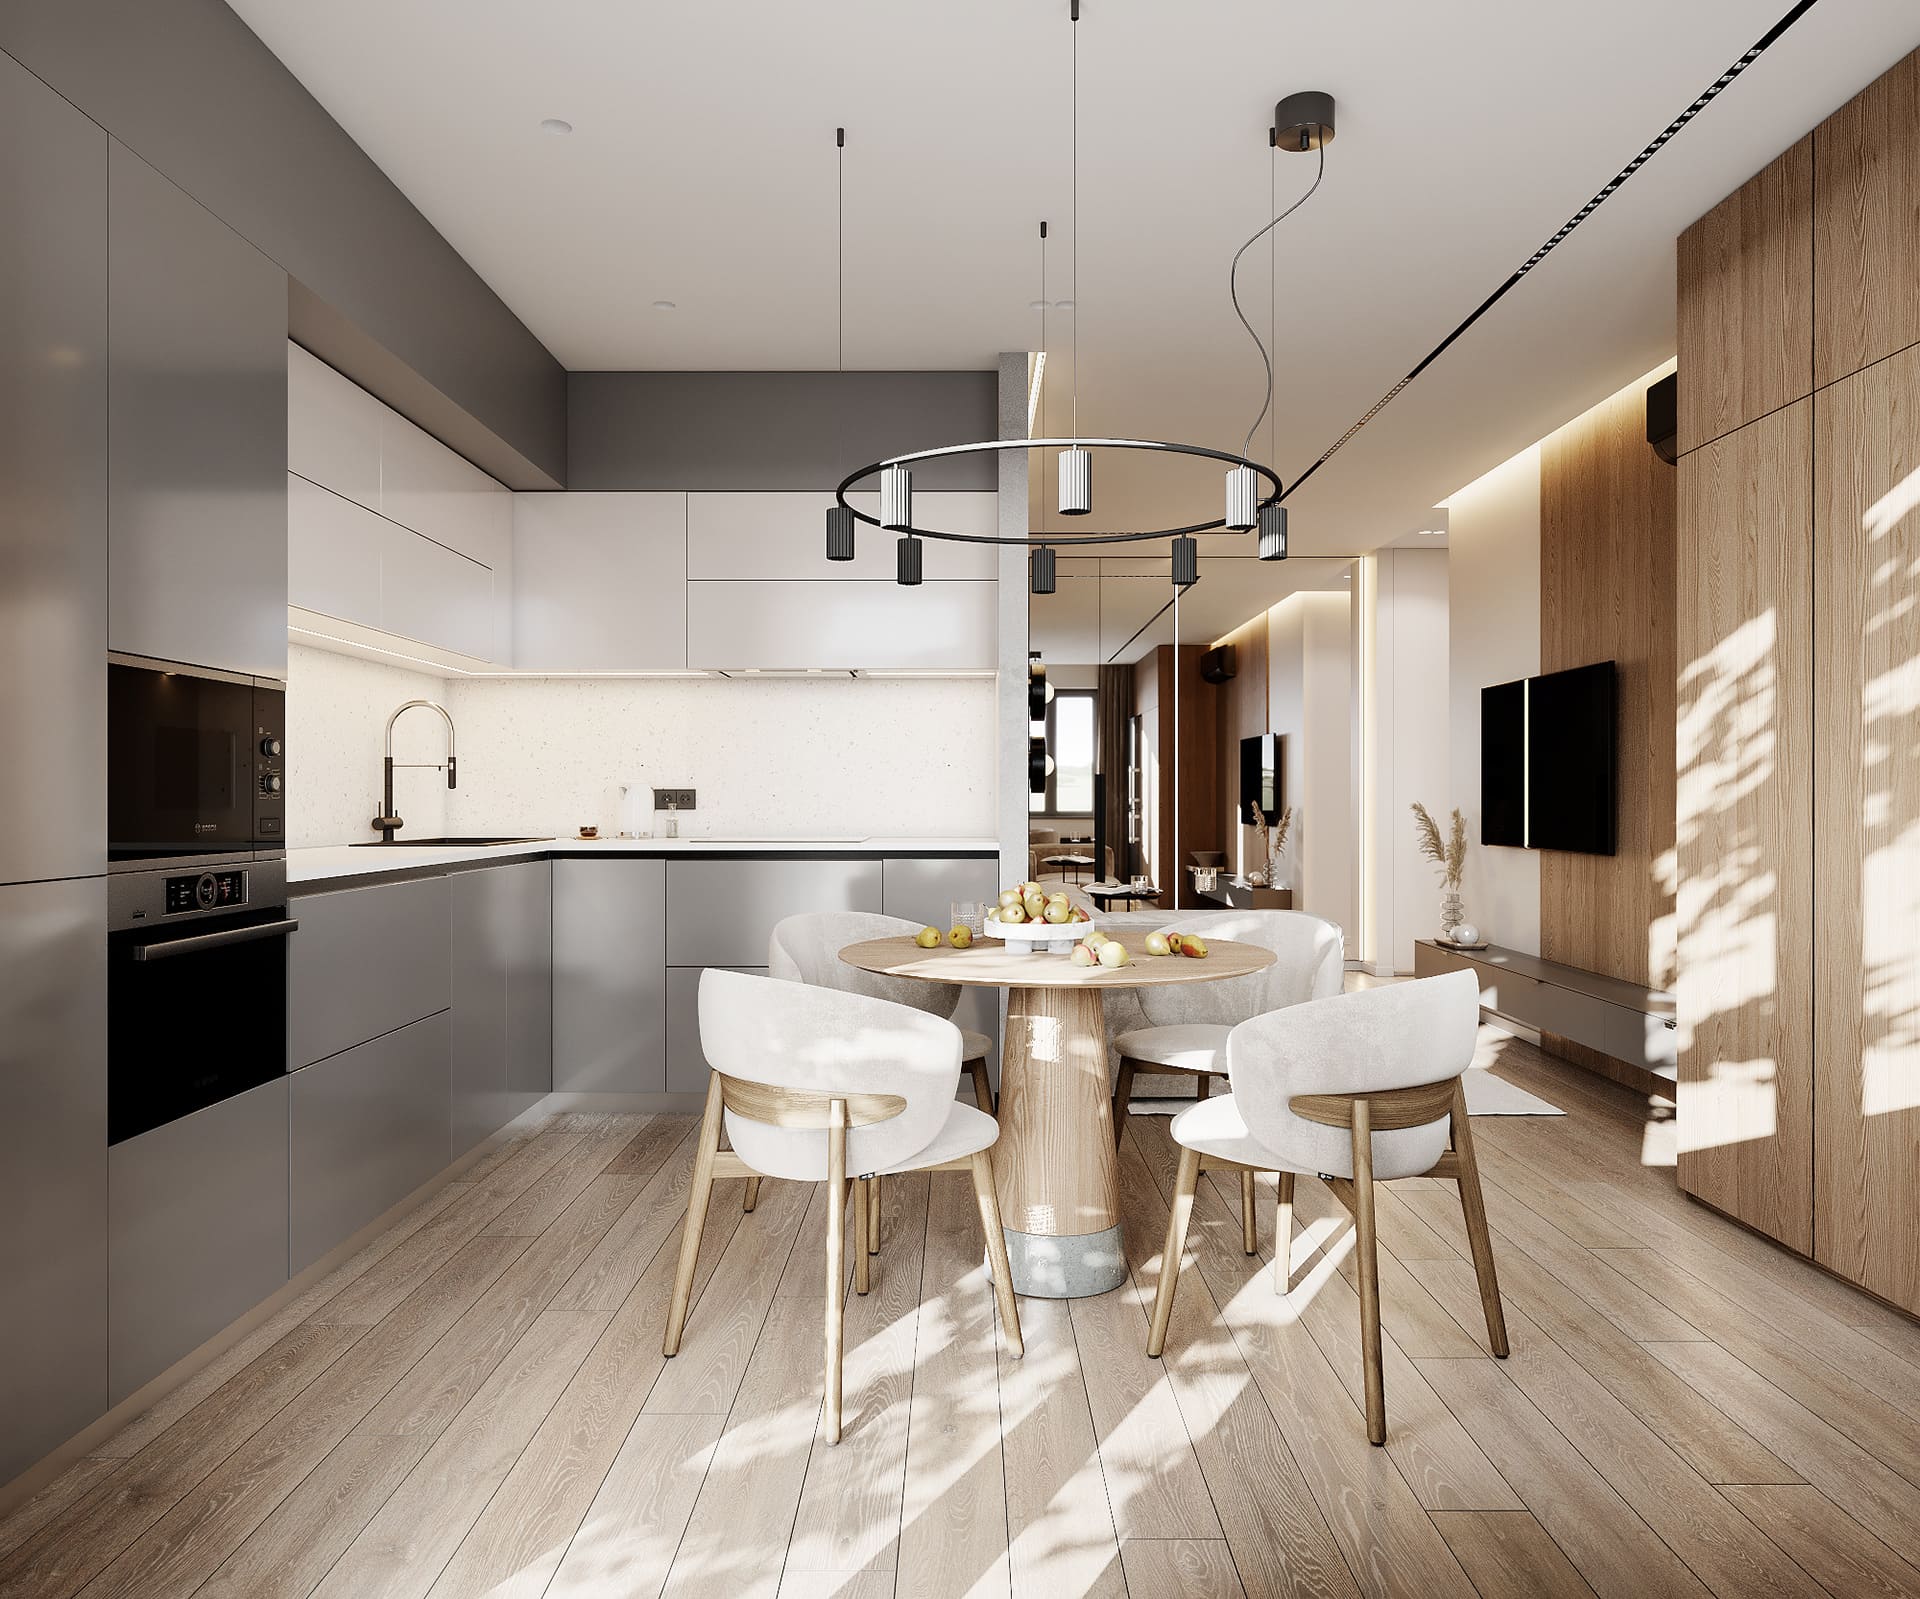 Лаконічна квартира у стилі мінімалізм, кухня-вітальня, фото 16